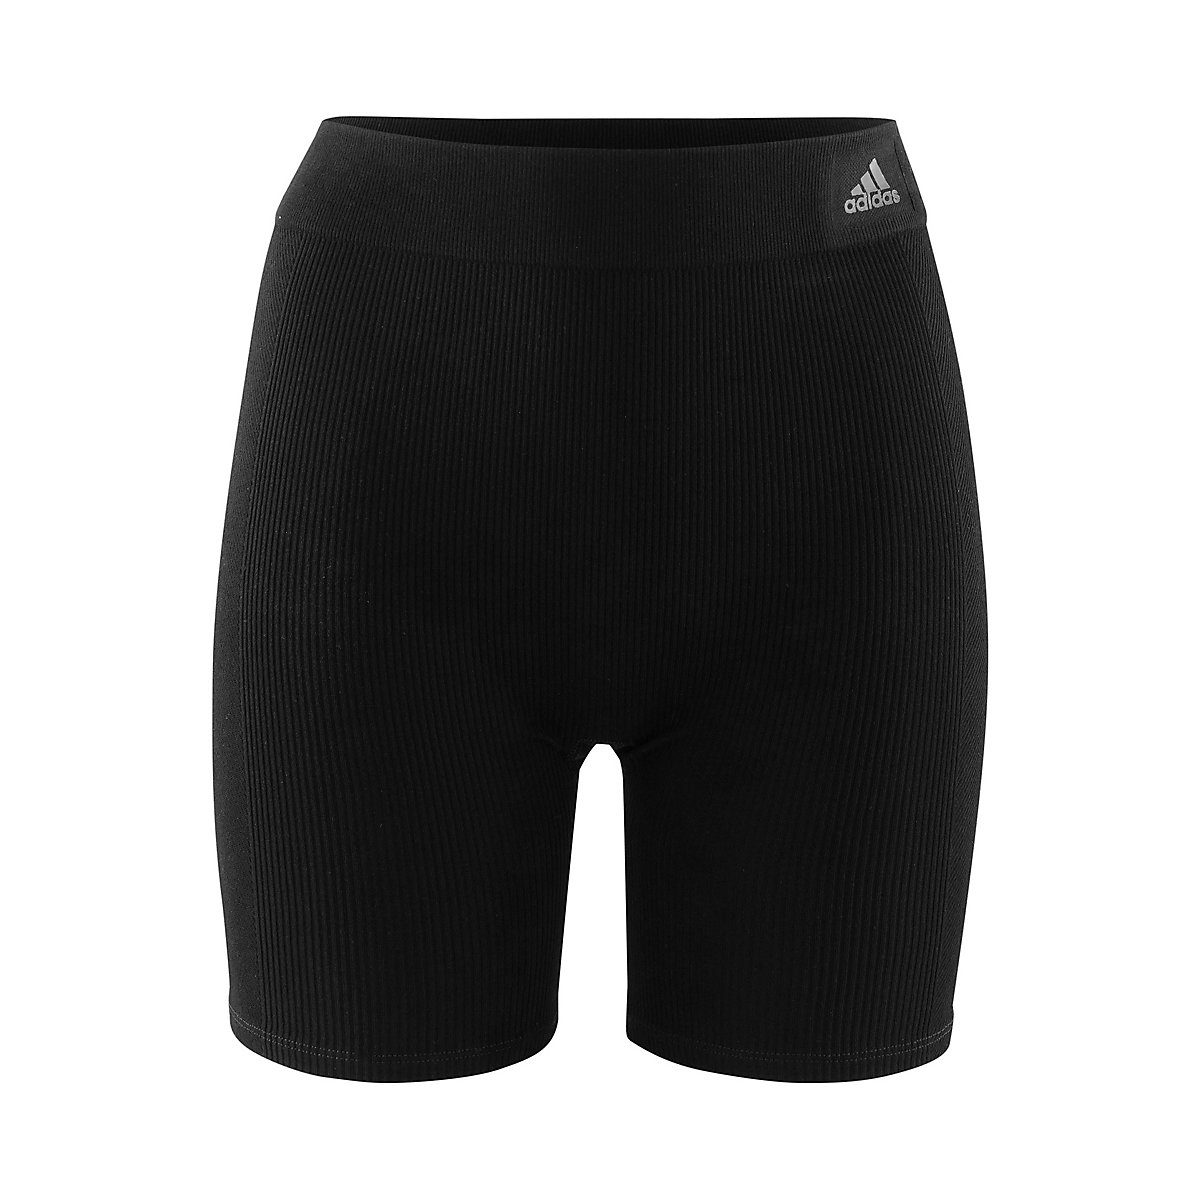 adidas Boxer Lounge Short Shorts schwarz